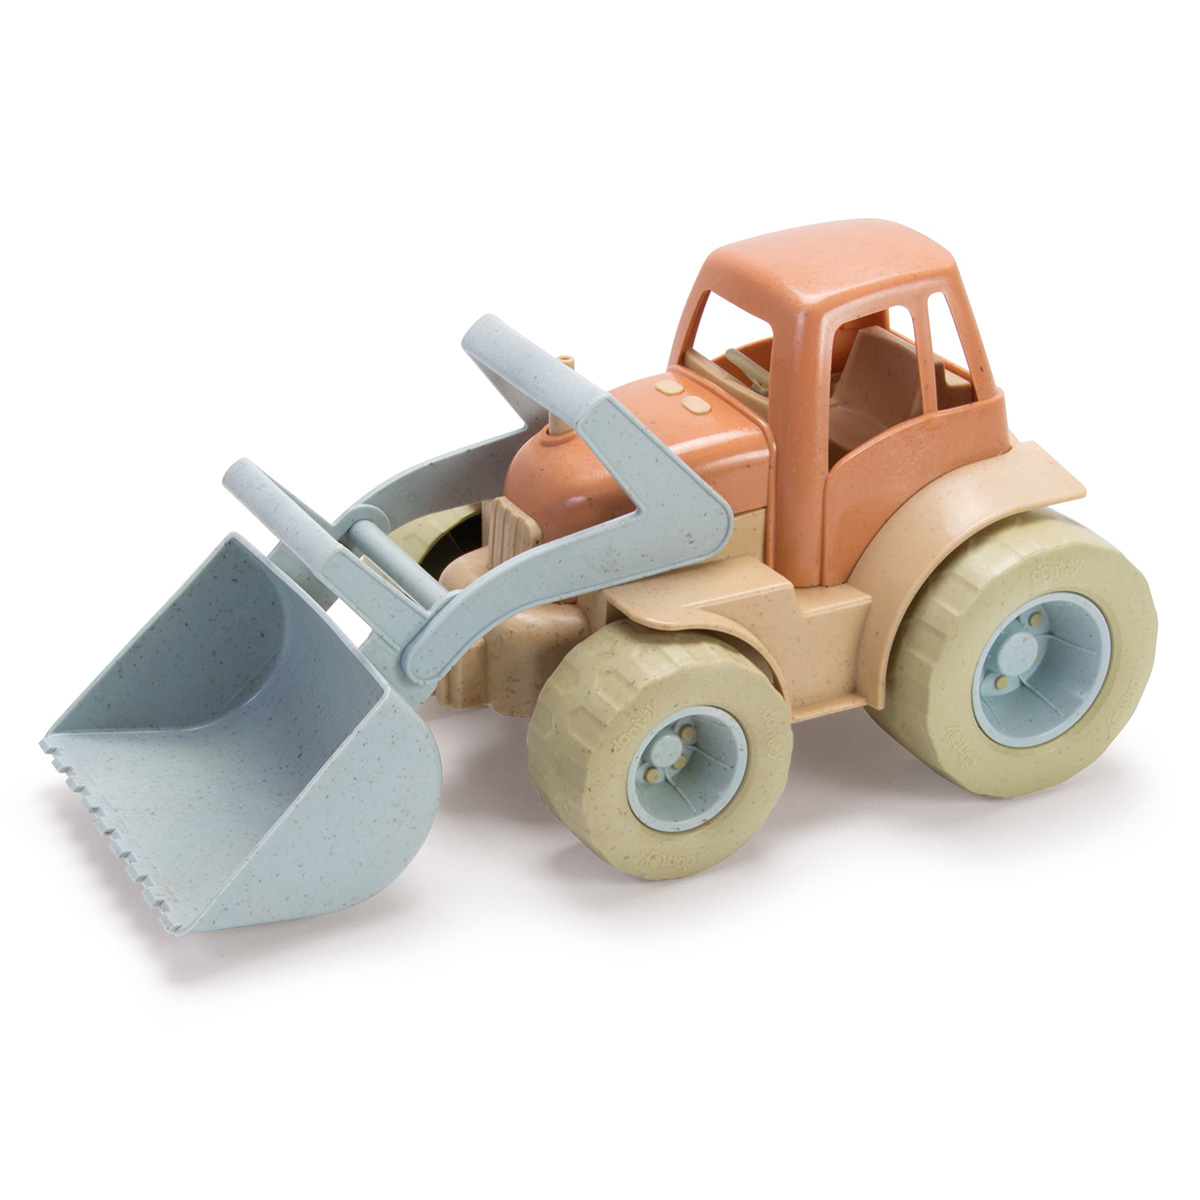 Dantoy Tracteur en Bioplastique - Mes premiers jouets Dantoy sur L